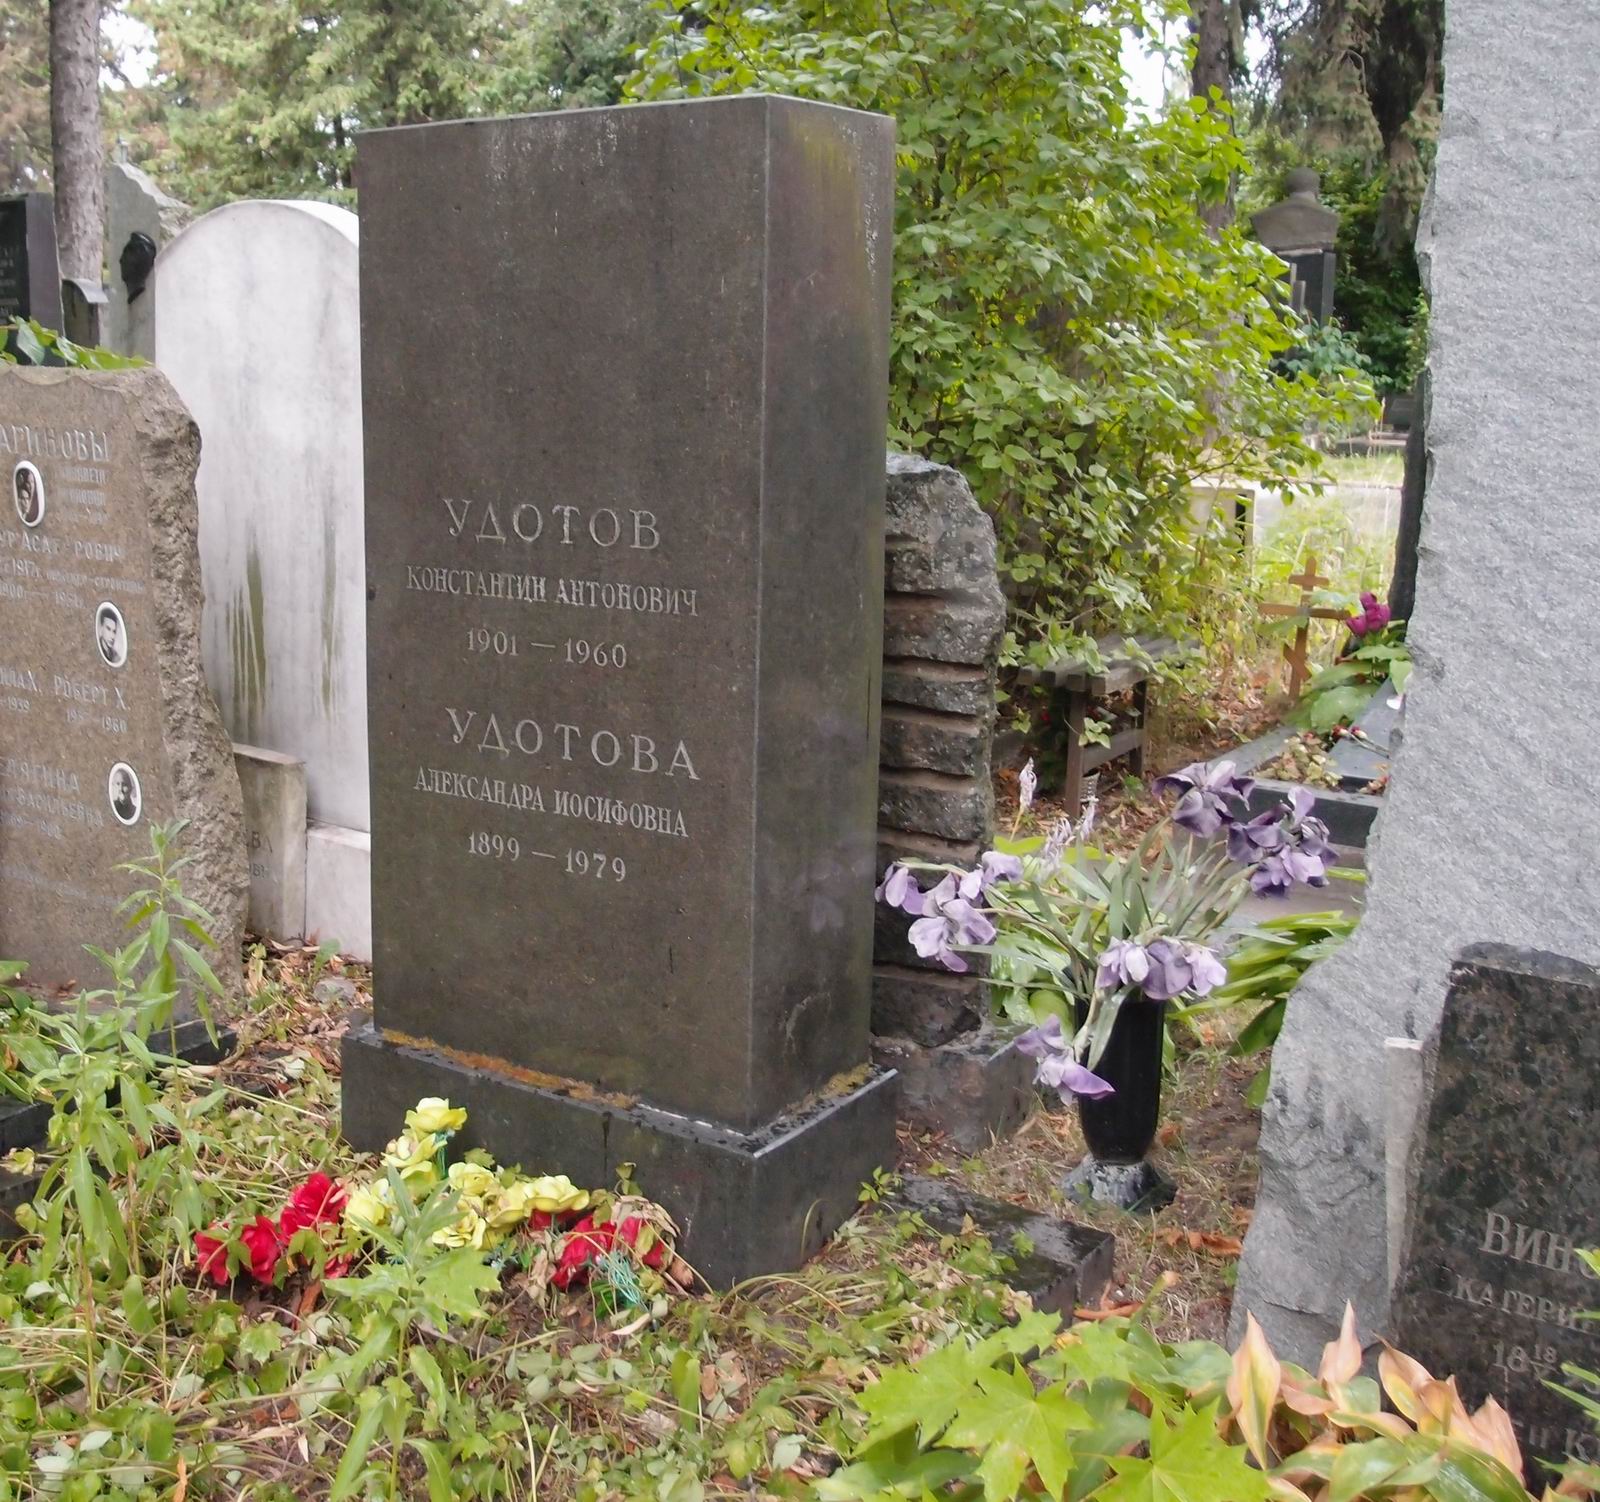 Памятник на могиле Удотова К.А. (1901–1960), на Новодевичьем кладбище (5–41–4).